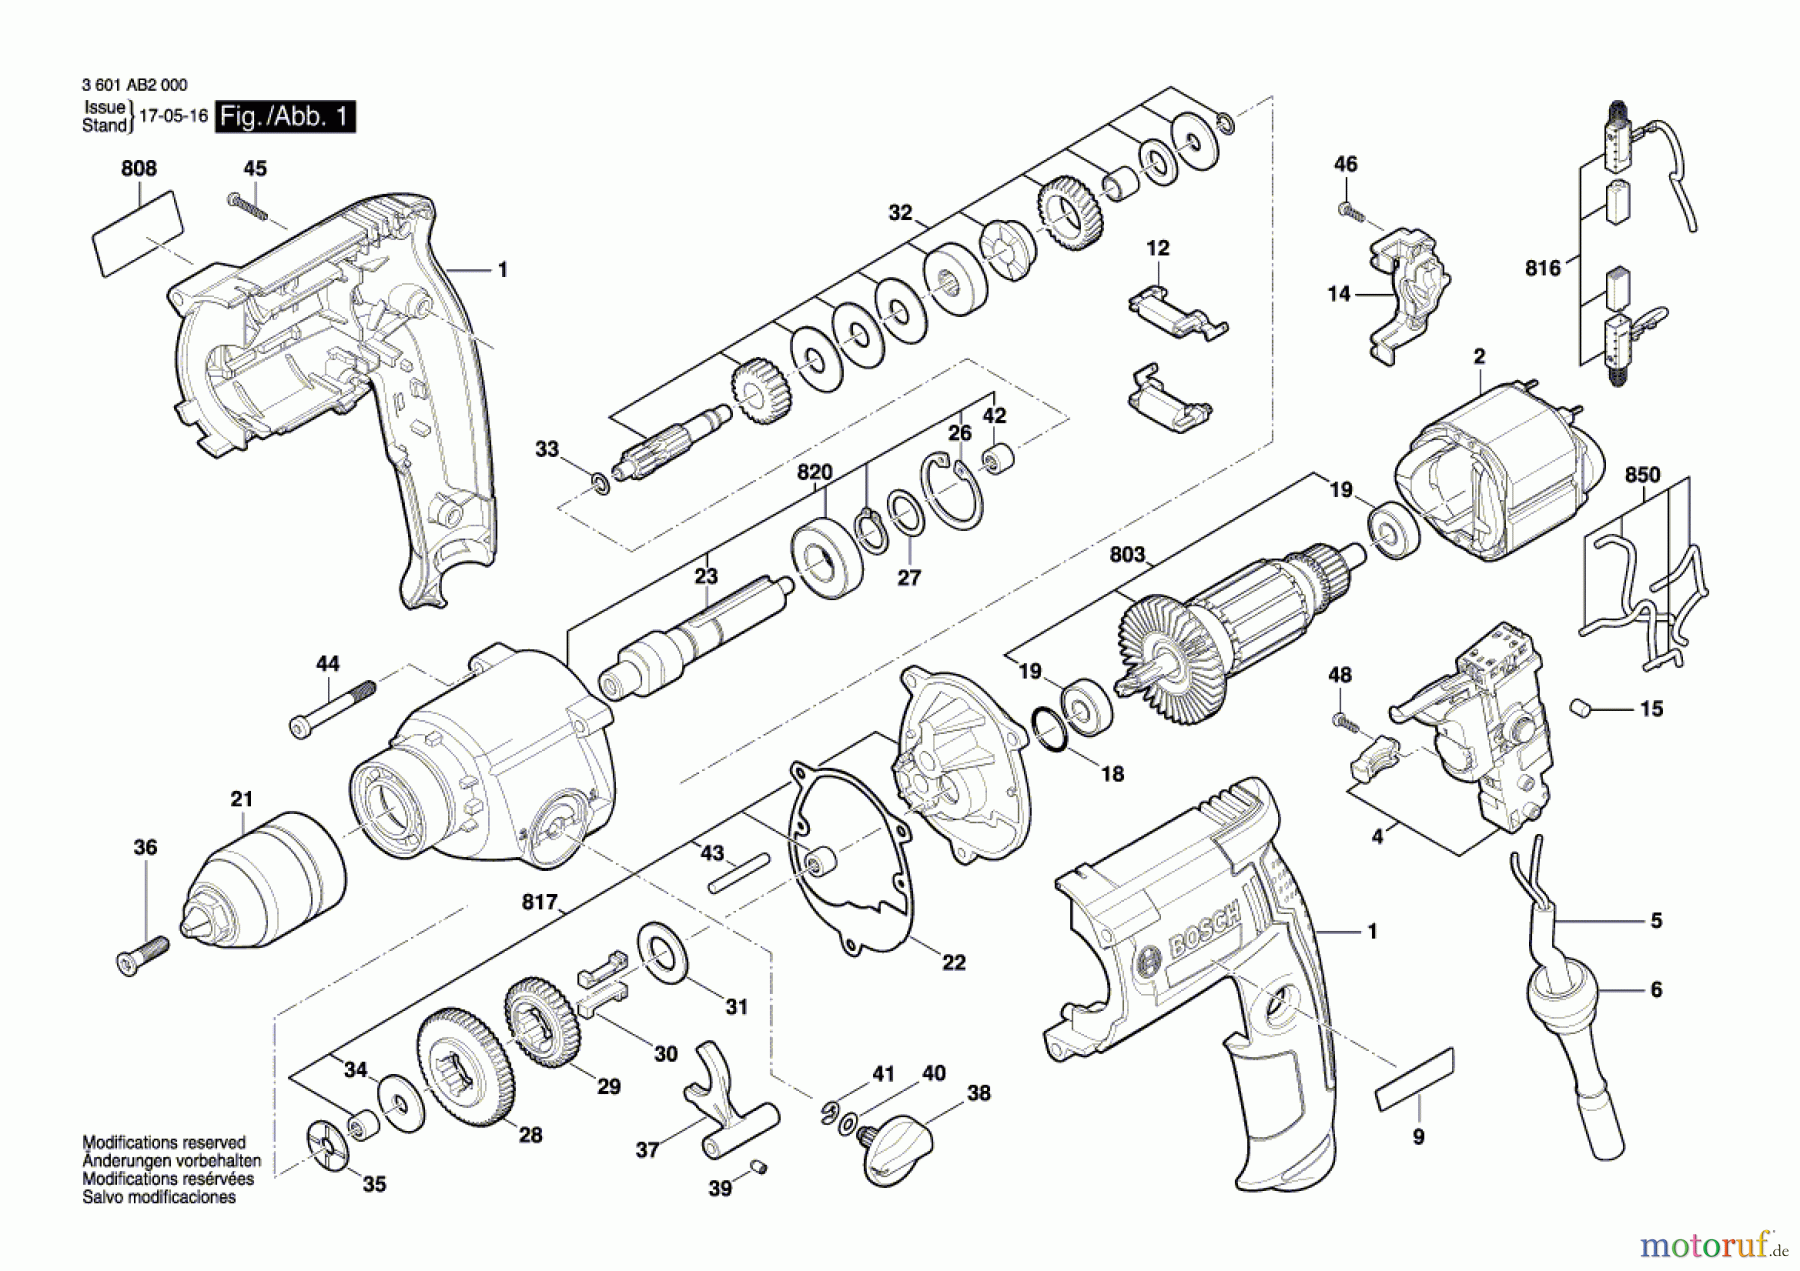  Bosch Werkzeug Bohrmaschine GBM 13-2 RE Seite 1